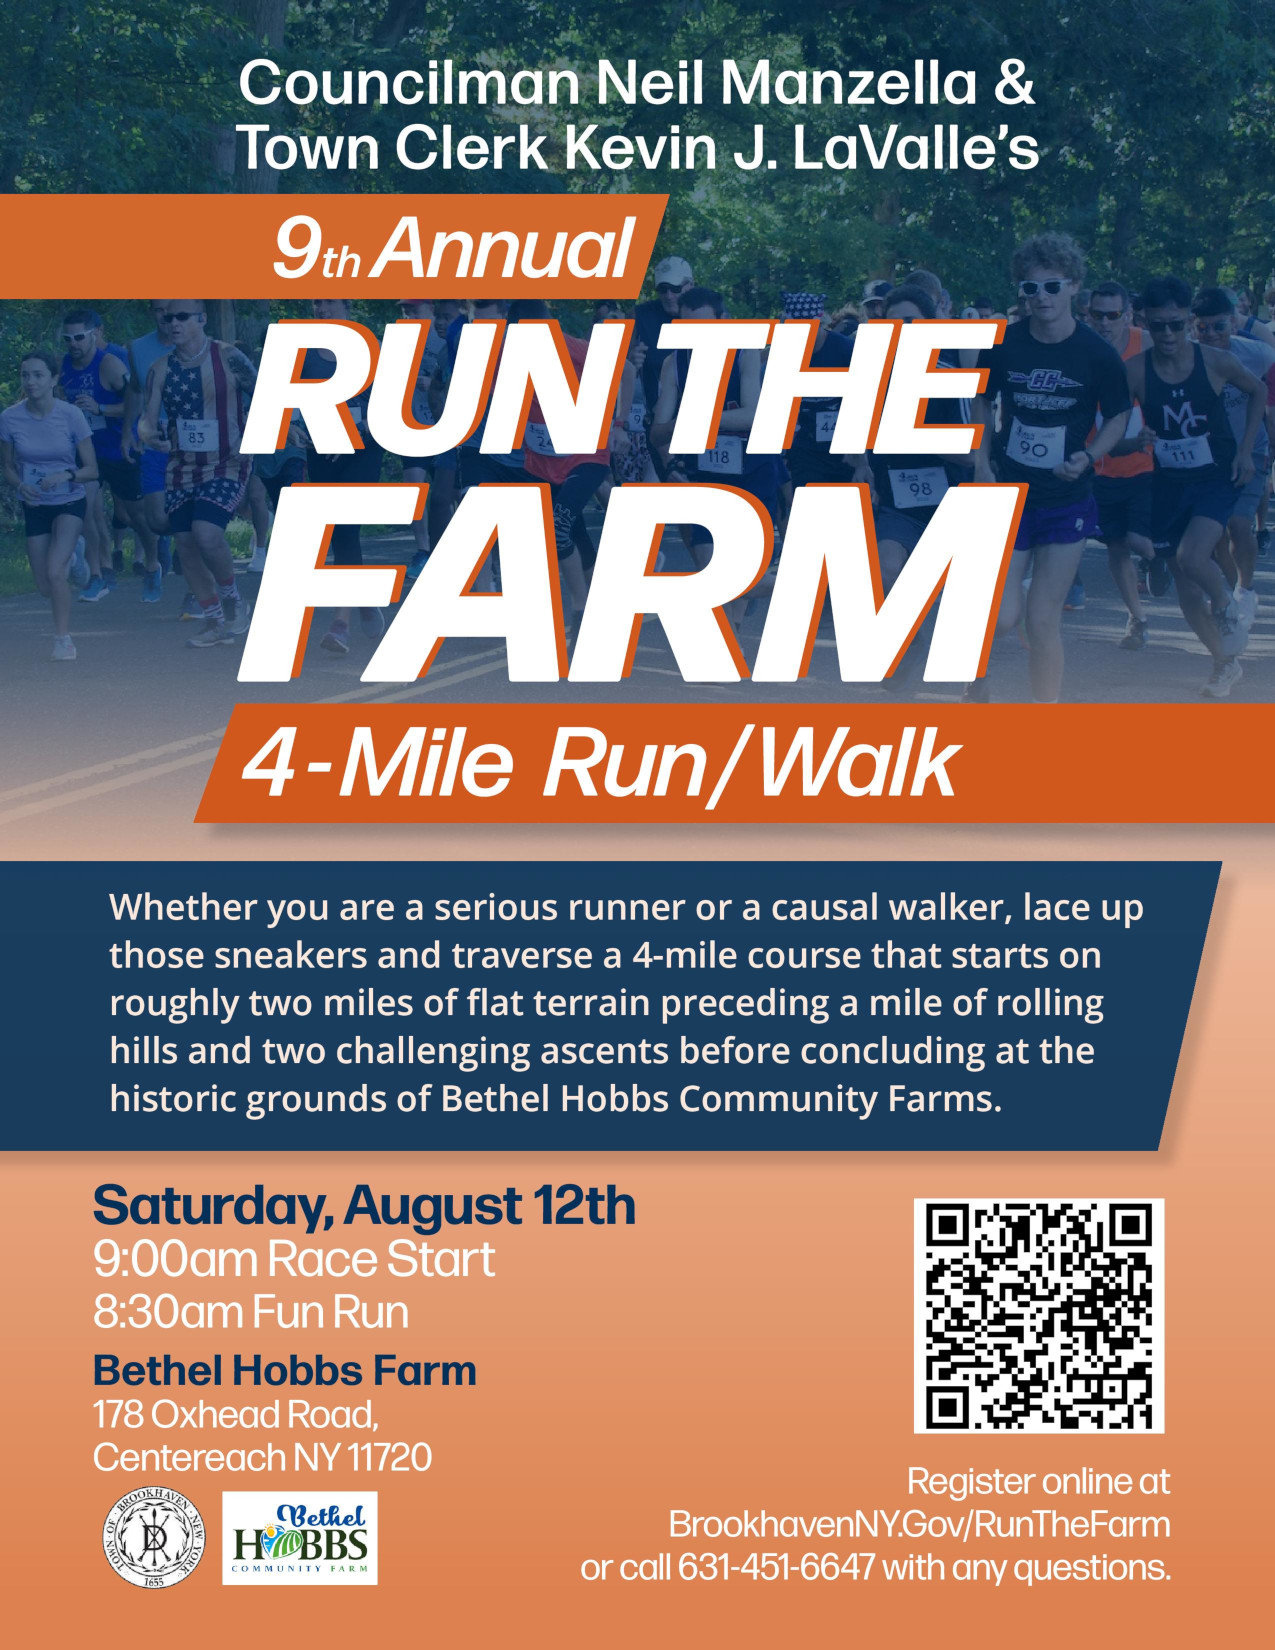 9th Annual Run The Farm 4-Mile Challenge